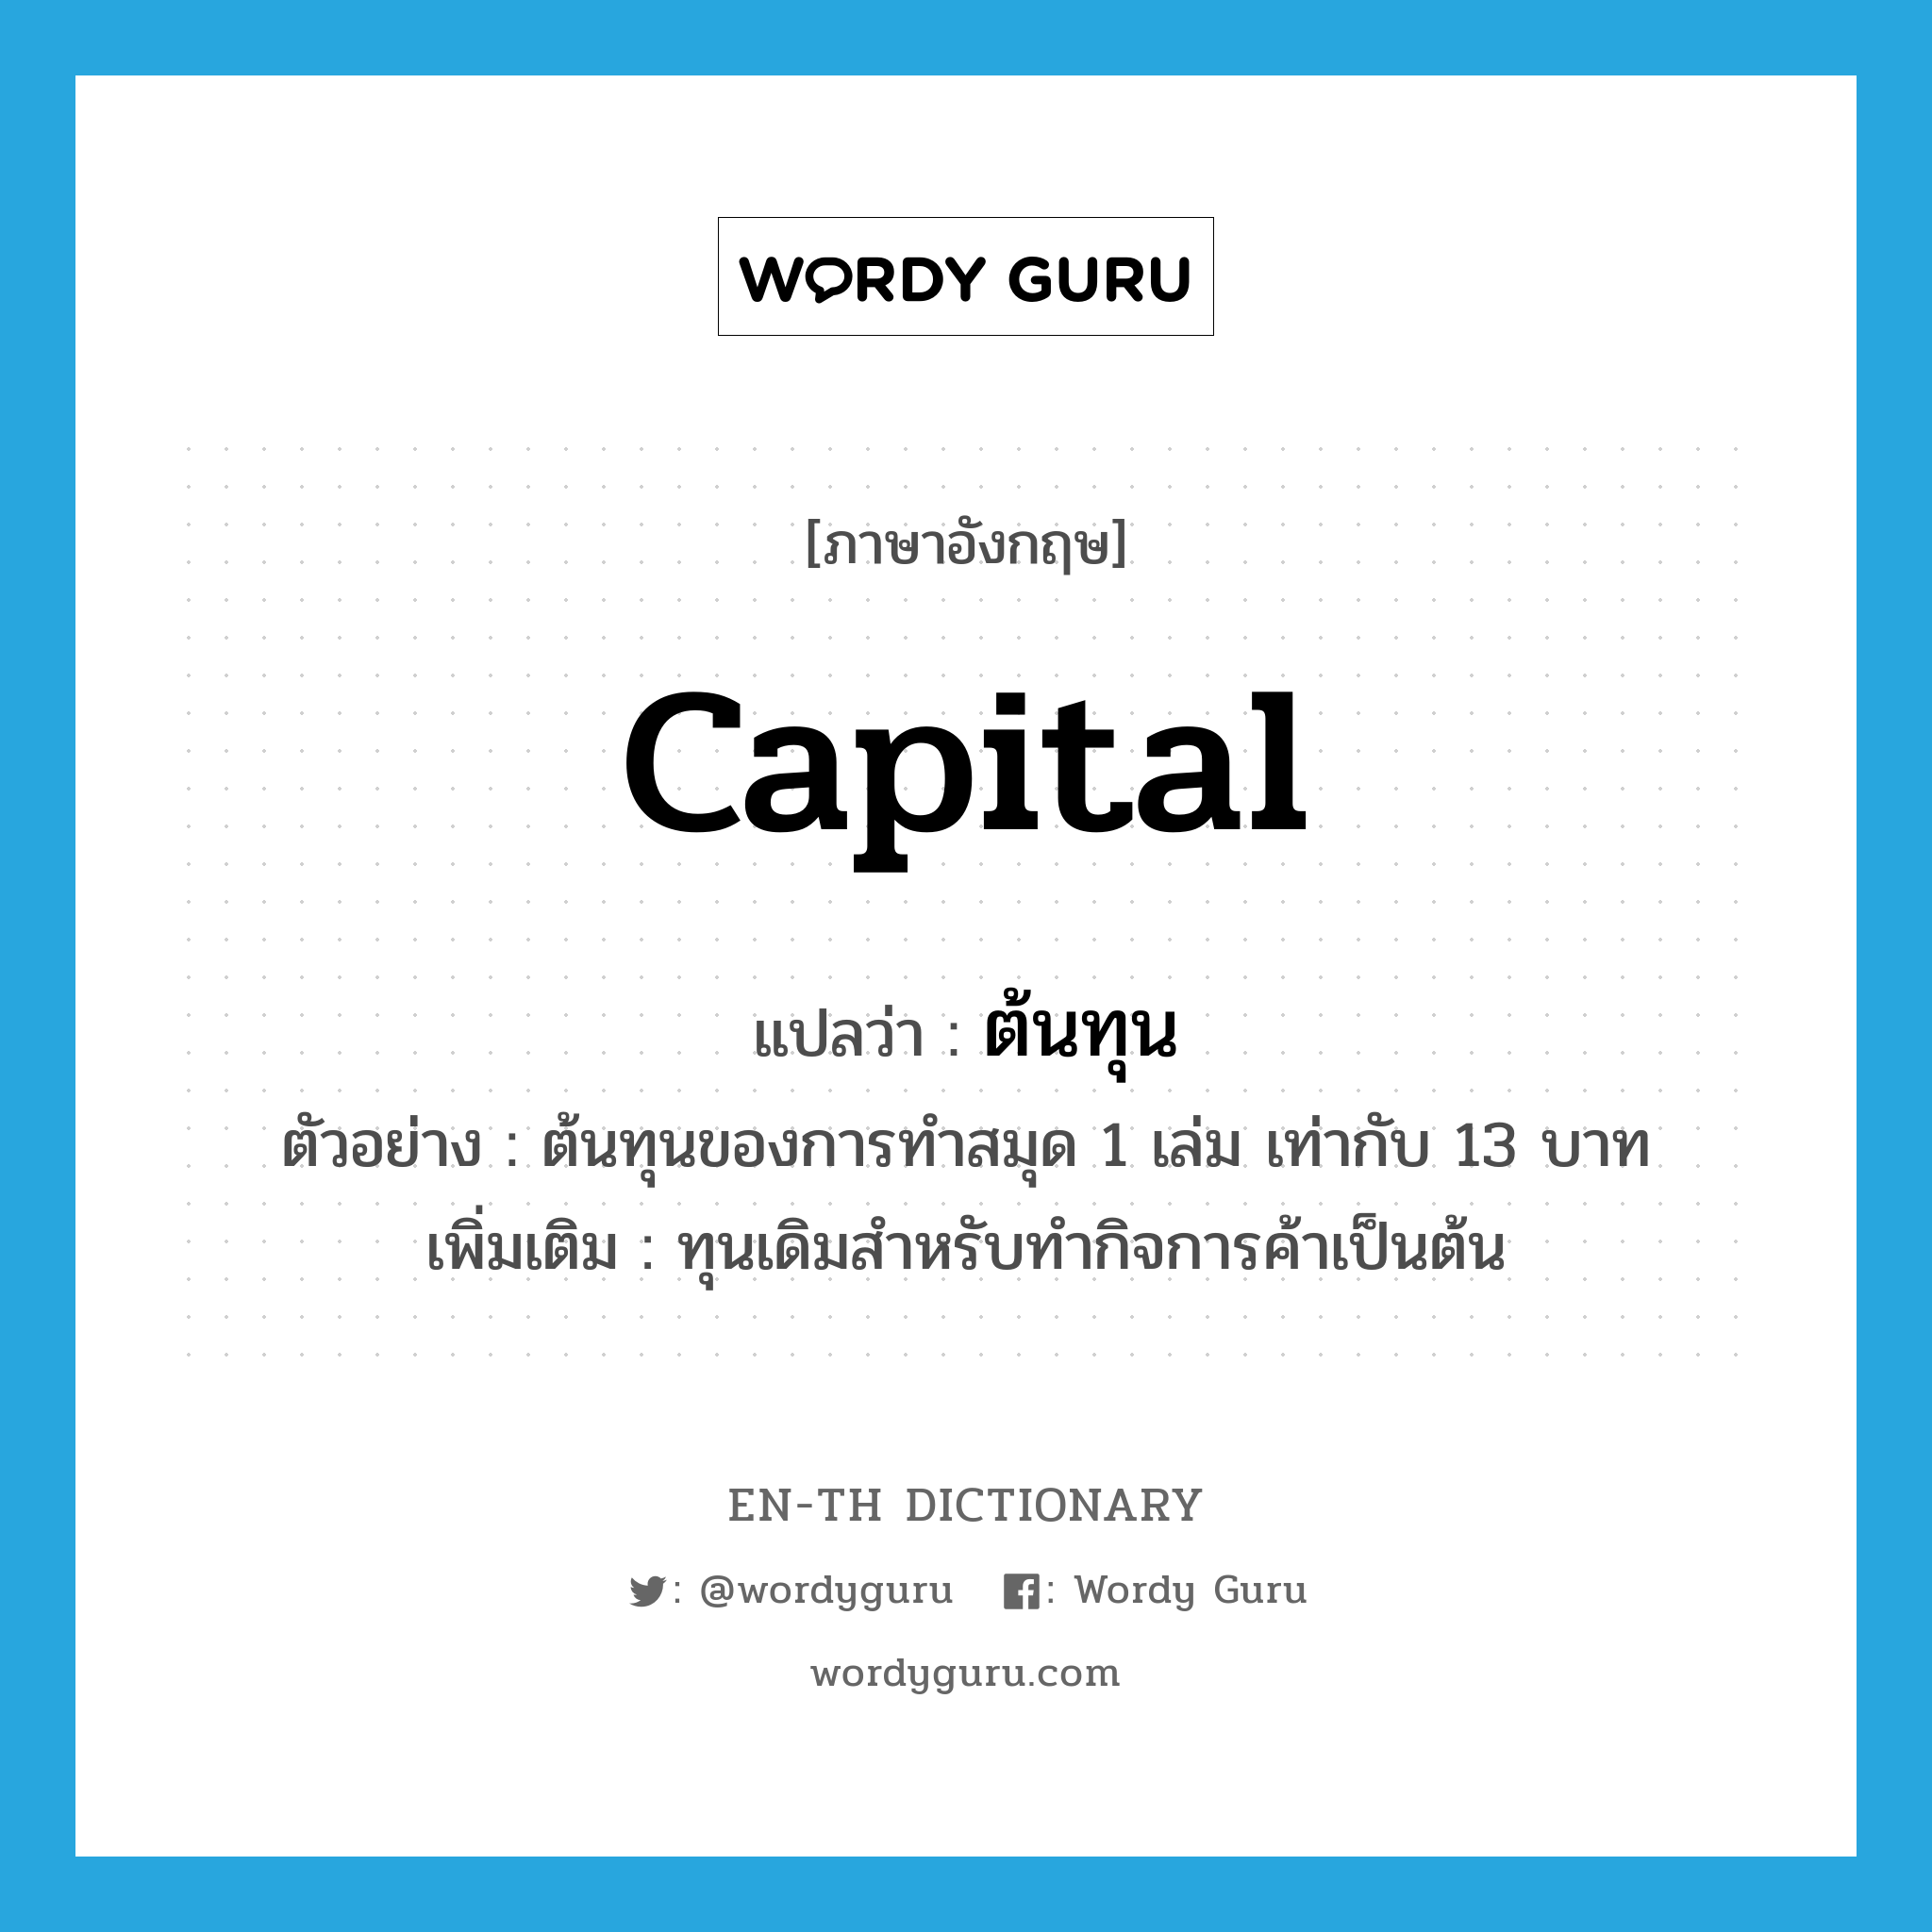 capital แปลว่า?, คำศัพท์ภาษาอังกฤษ capital แปลว่า ต้นทุน ประเภท N ตัวอย่าง ต้นทุนของการทำสมุด 1 เล่ม เท่ากับ 13 บาท เพิ่มเติม ทุนเดิมสำหรับทำกิจการค้าเป็นต้น หมวด N